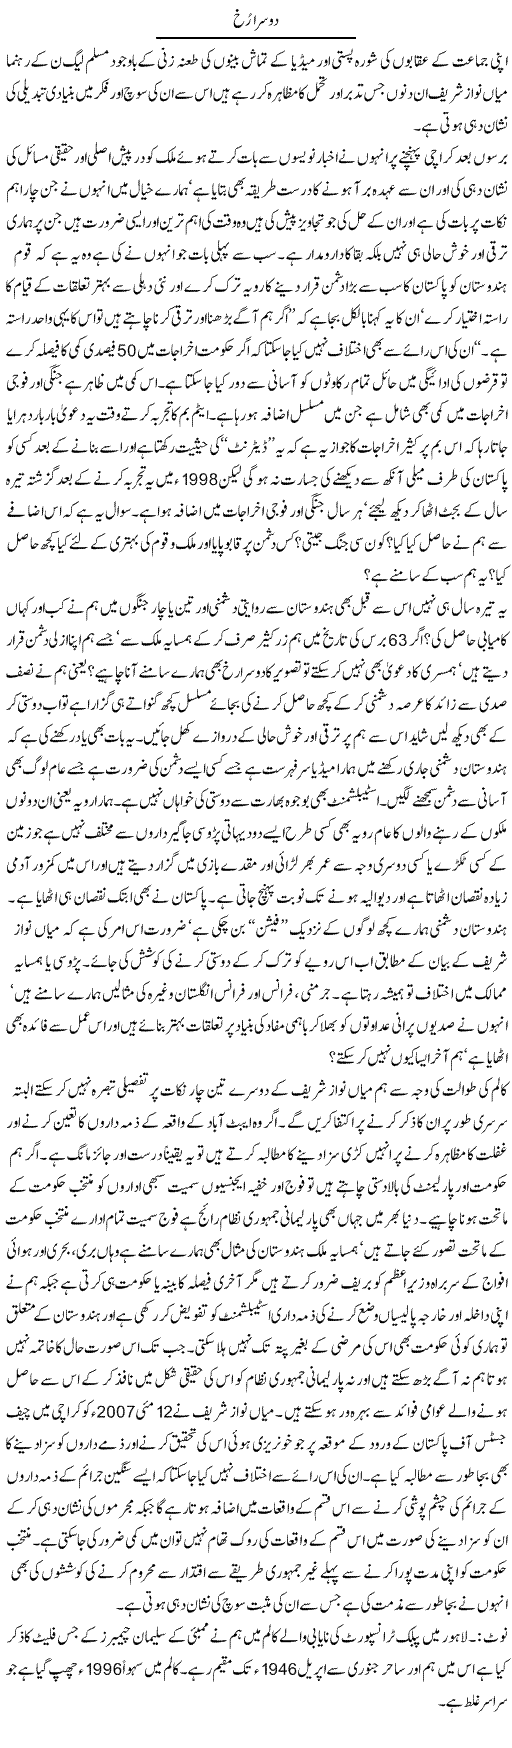 Nawaz Sharif Changed Express Column Hameed Akhtar 19 May 2011